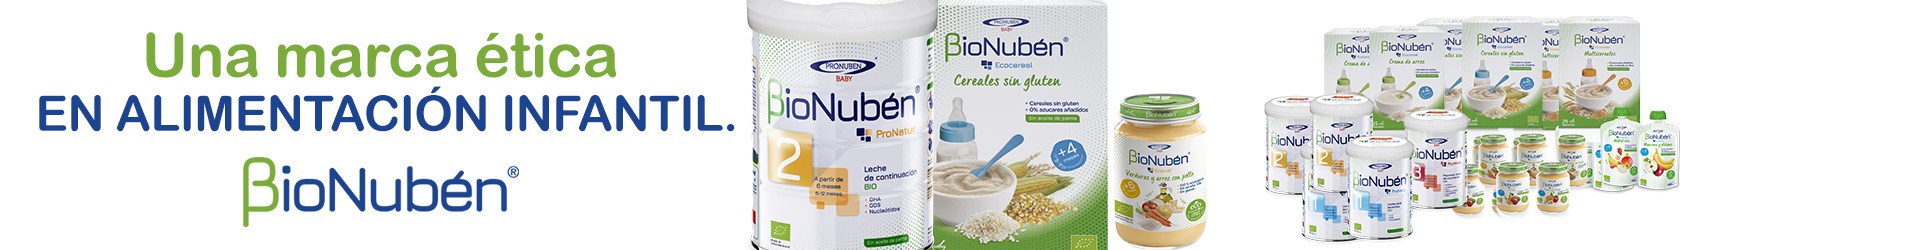 Gamme de produits BioNuben